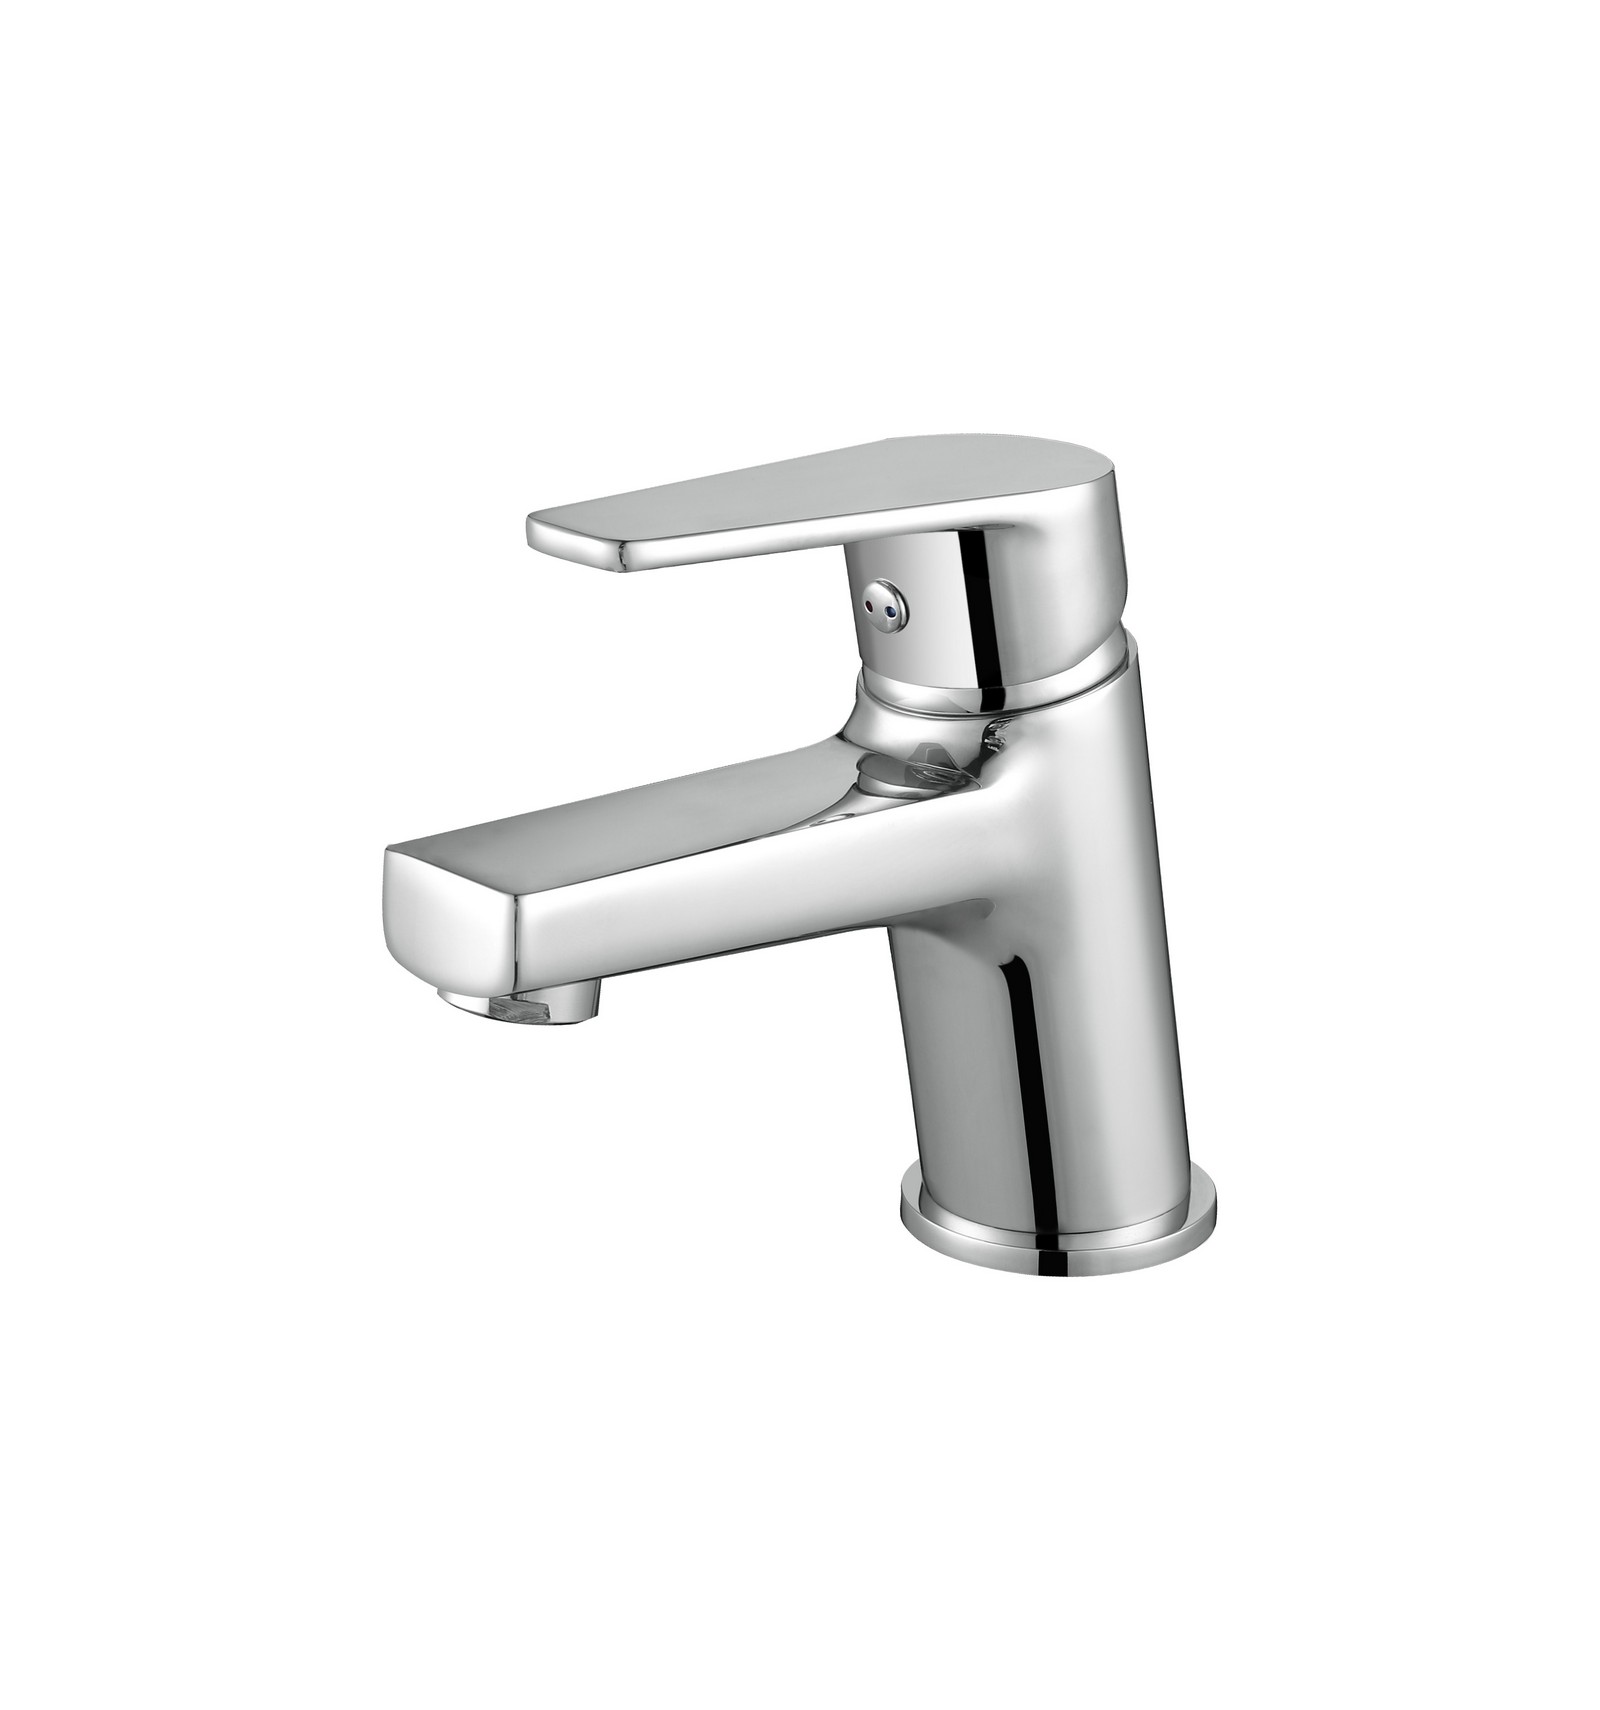 https://projecteur-led-shop.com/7657-thickbox_default/robinet-sense-salle-de-bain-chrome-m-a-deux-voies-pour-eau-chaude-eau-froide-.jpg